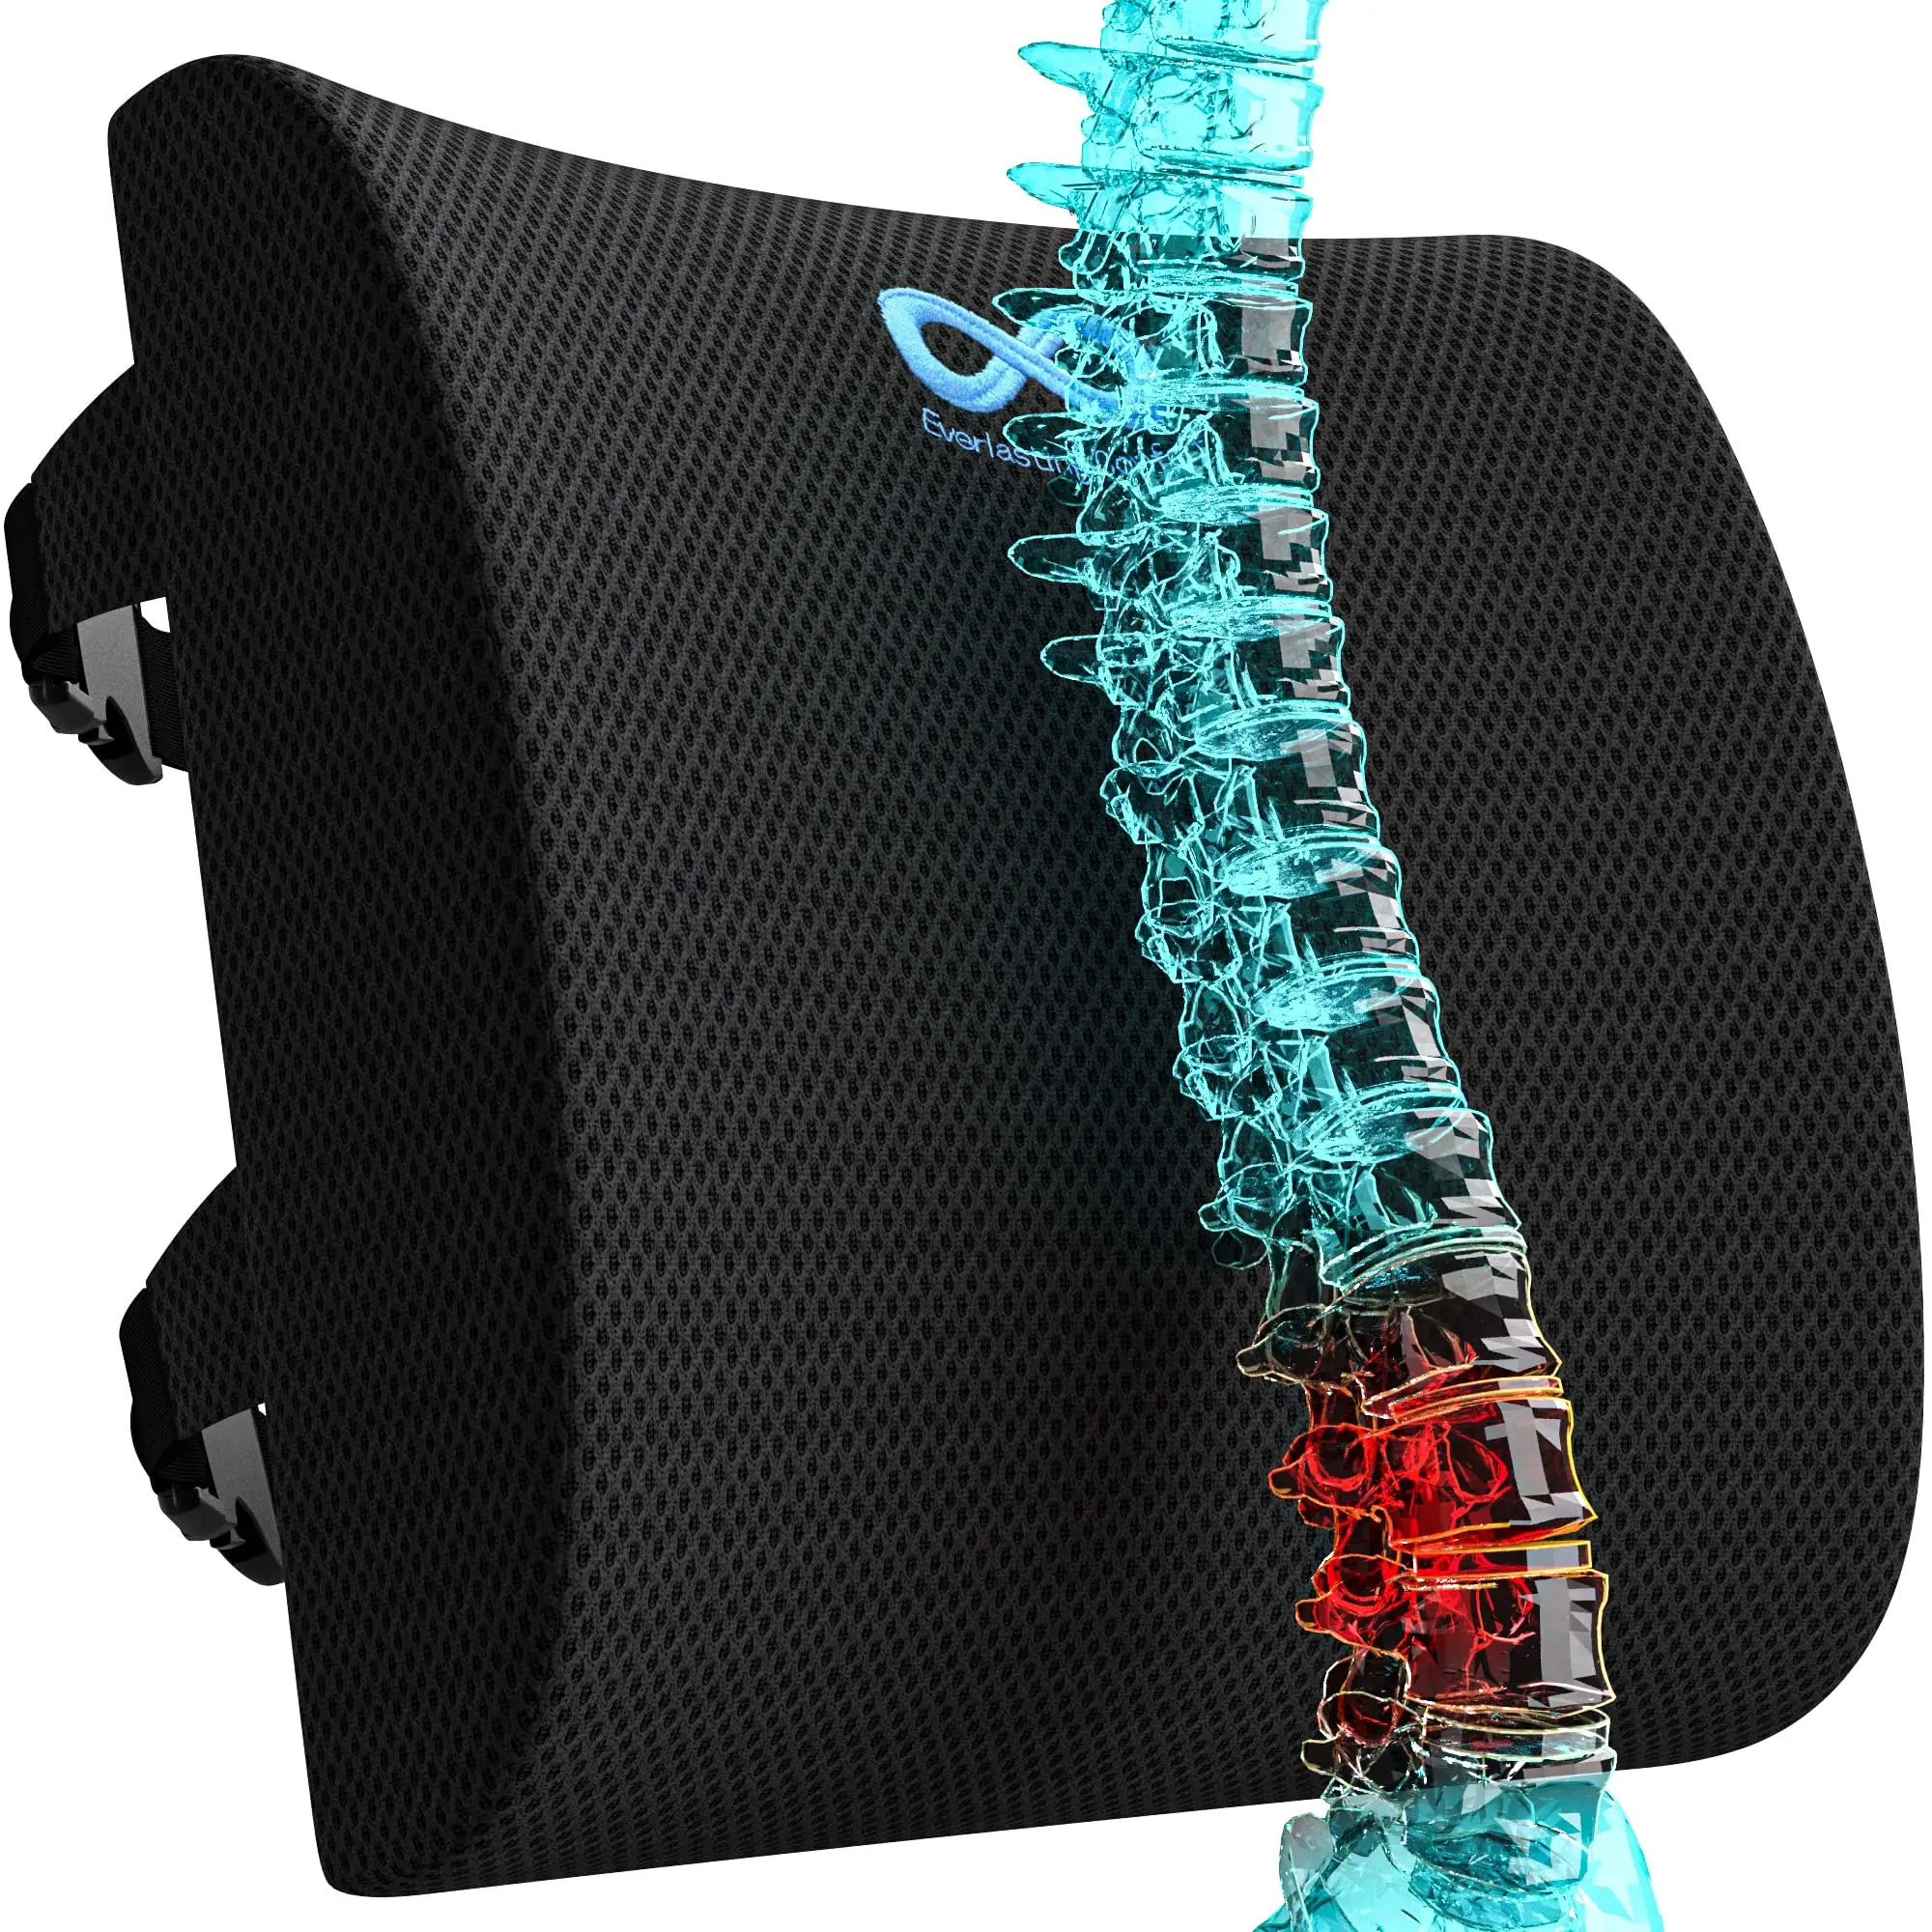 Soporte lumbar de espuma viscoelástica, soporte para la espalda con trampas ajustables